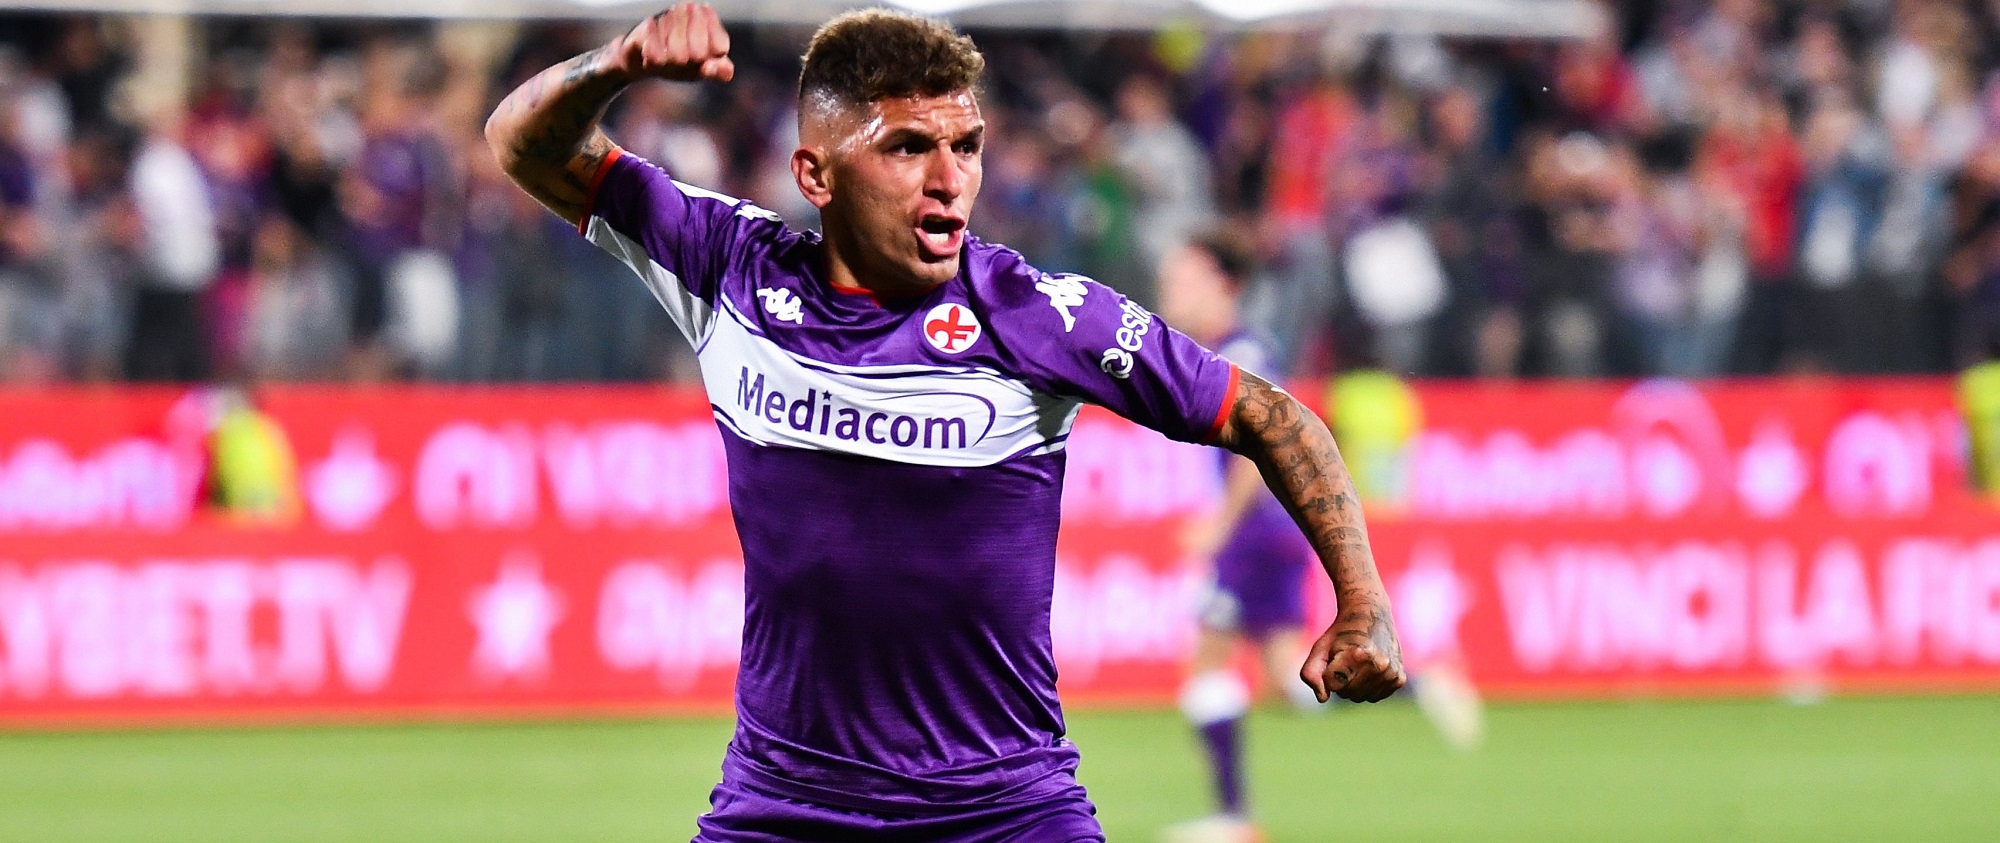 Lucas Torreira Salahkan Pihak Tertentu Atas Kegagalan Pindah Permanen ke Fiorentina